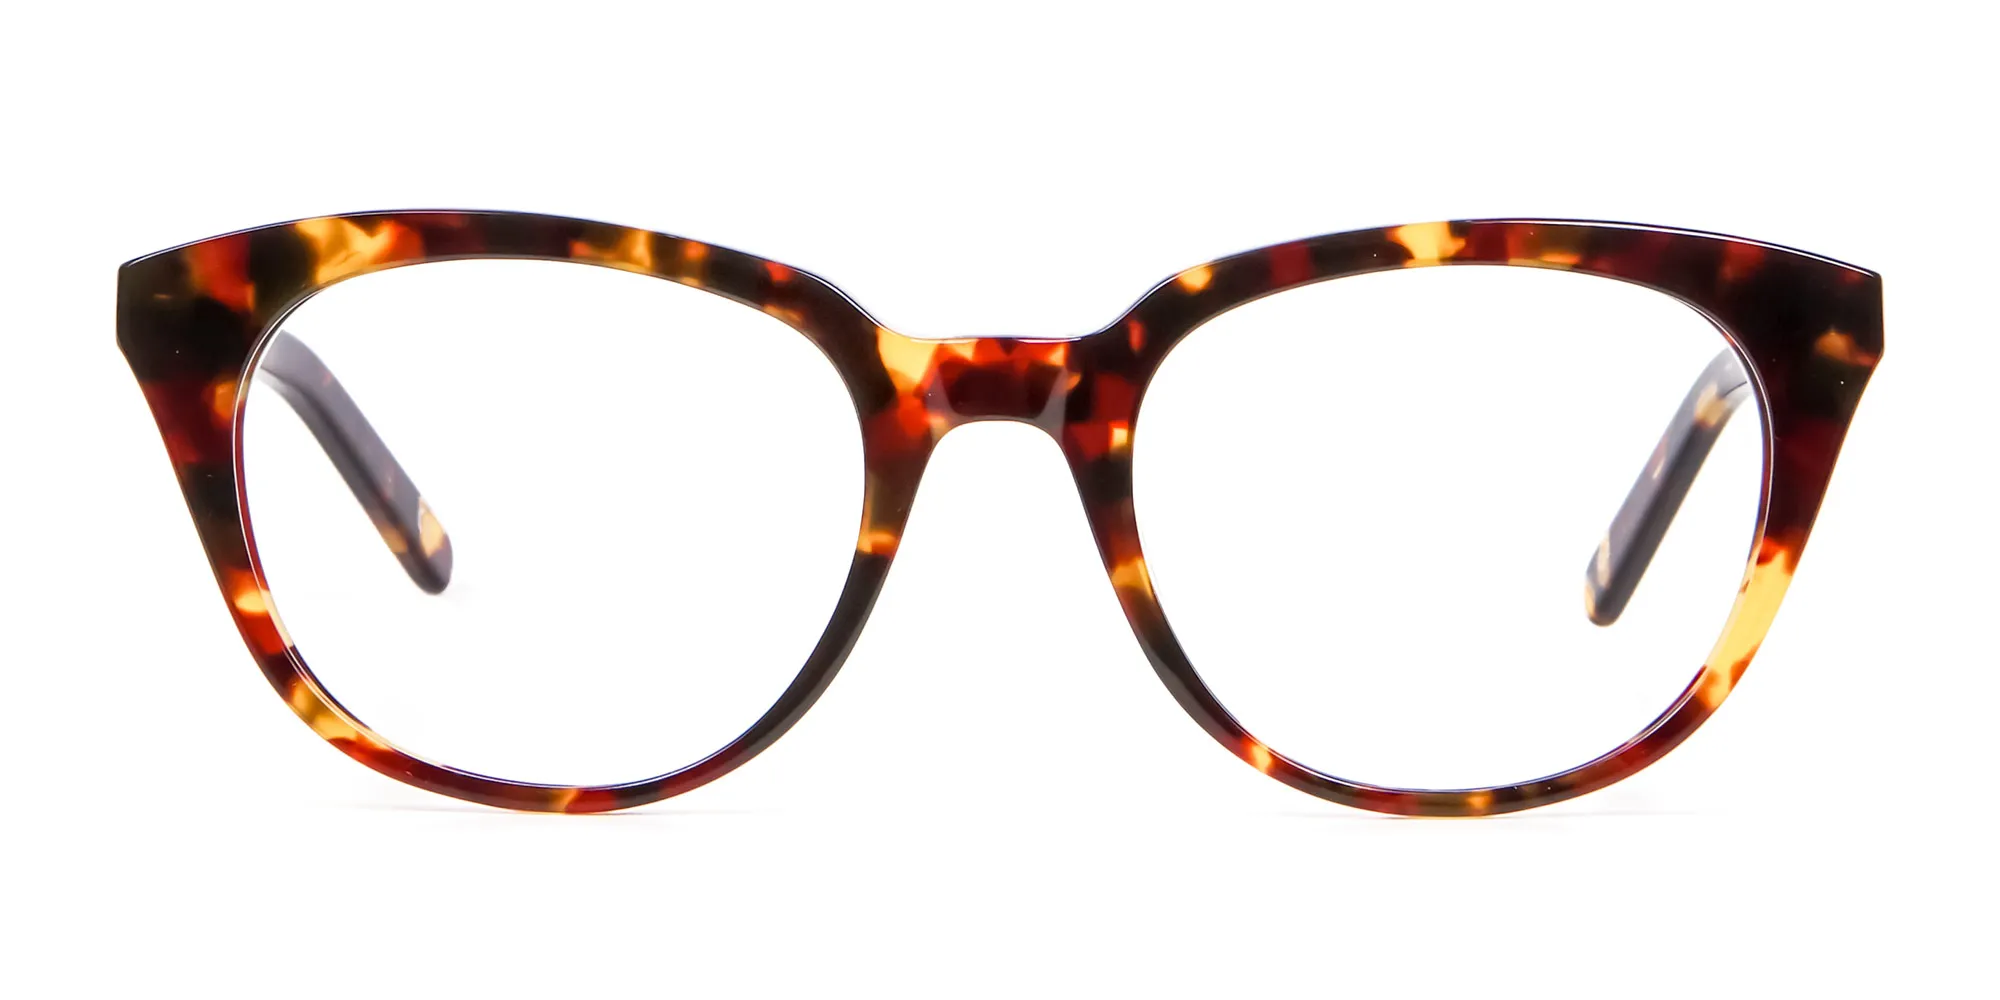 Sunshine Tone Tortoiseshell Glasses - 1